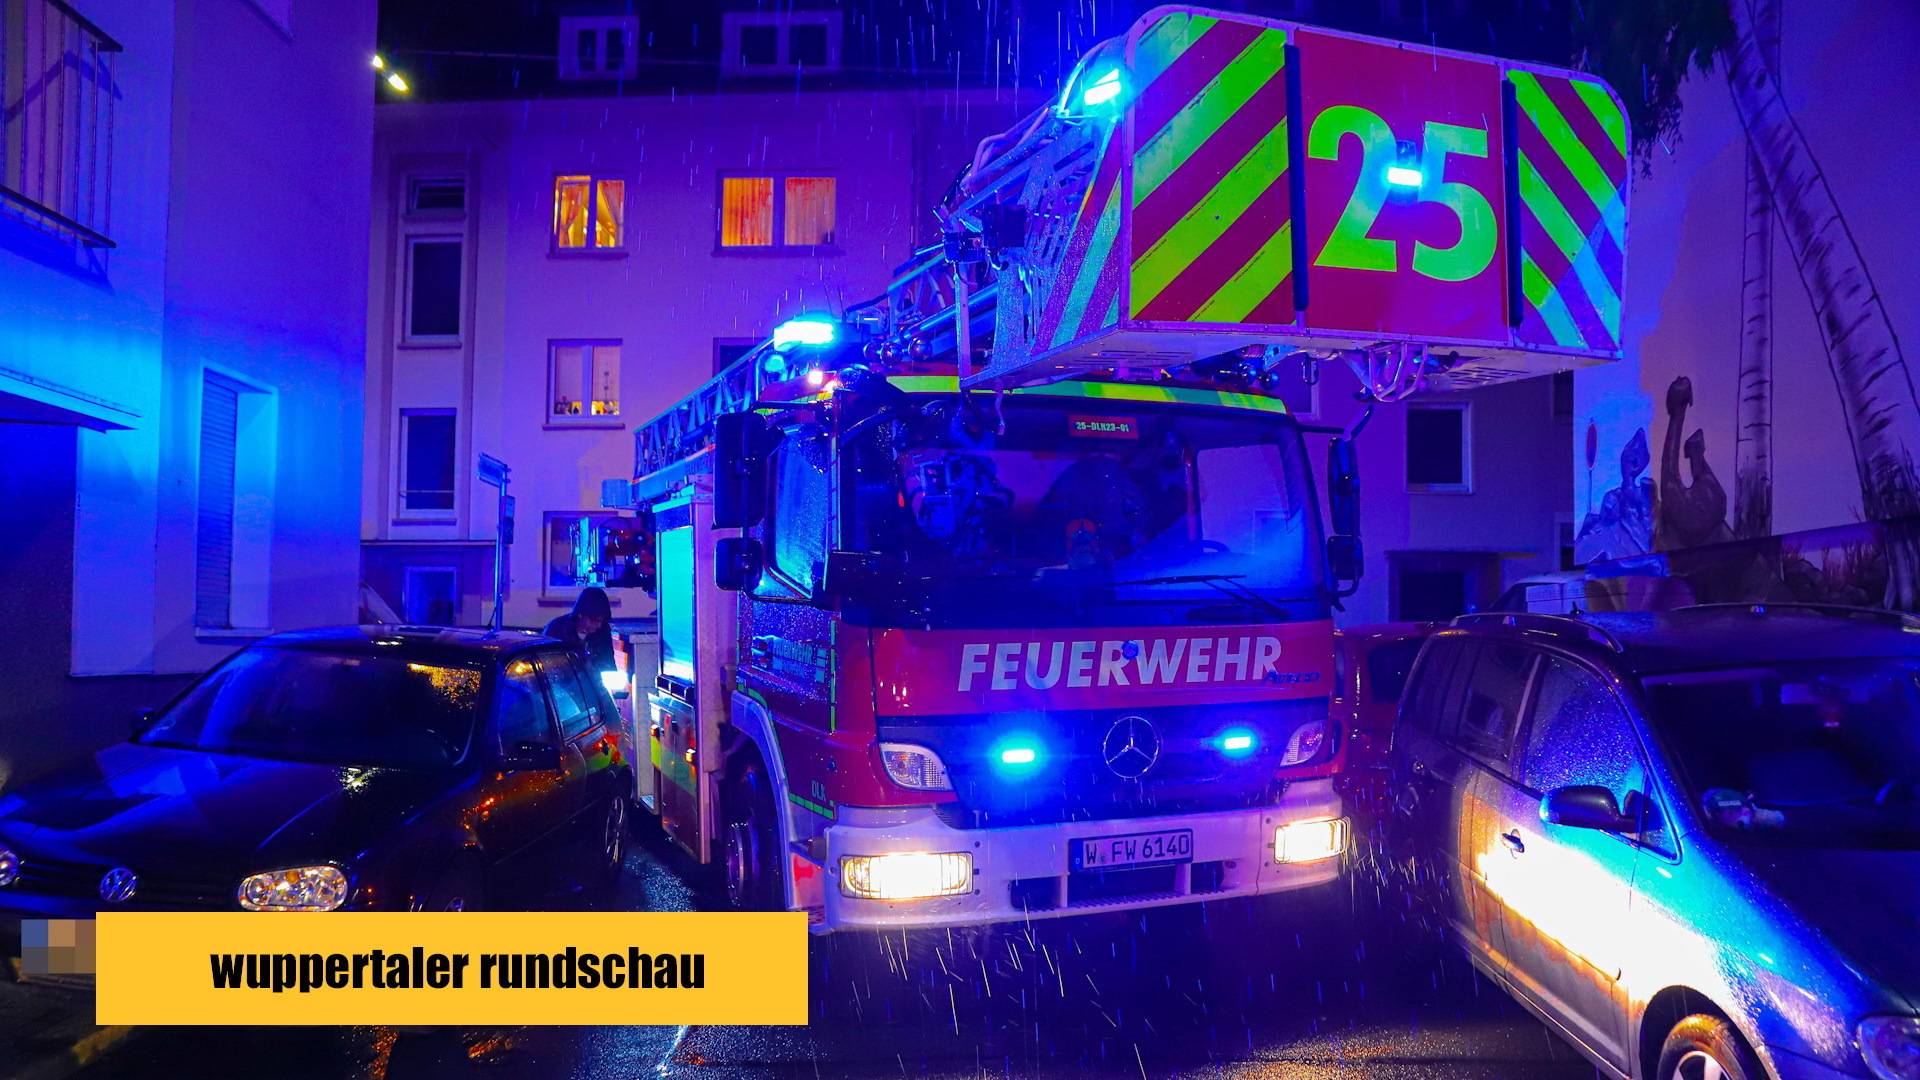 Wuppertaler Feuerwehr und die Anfahrprobleme